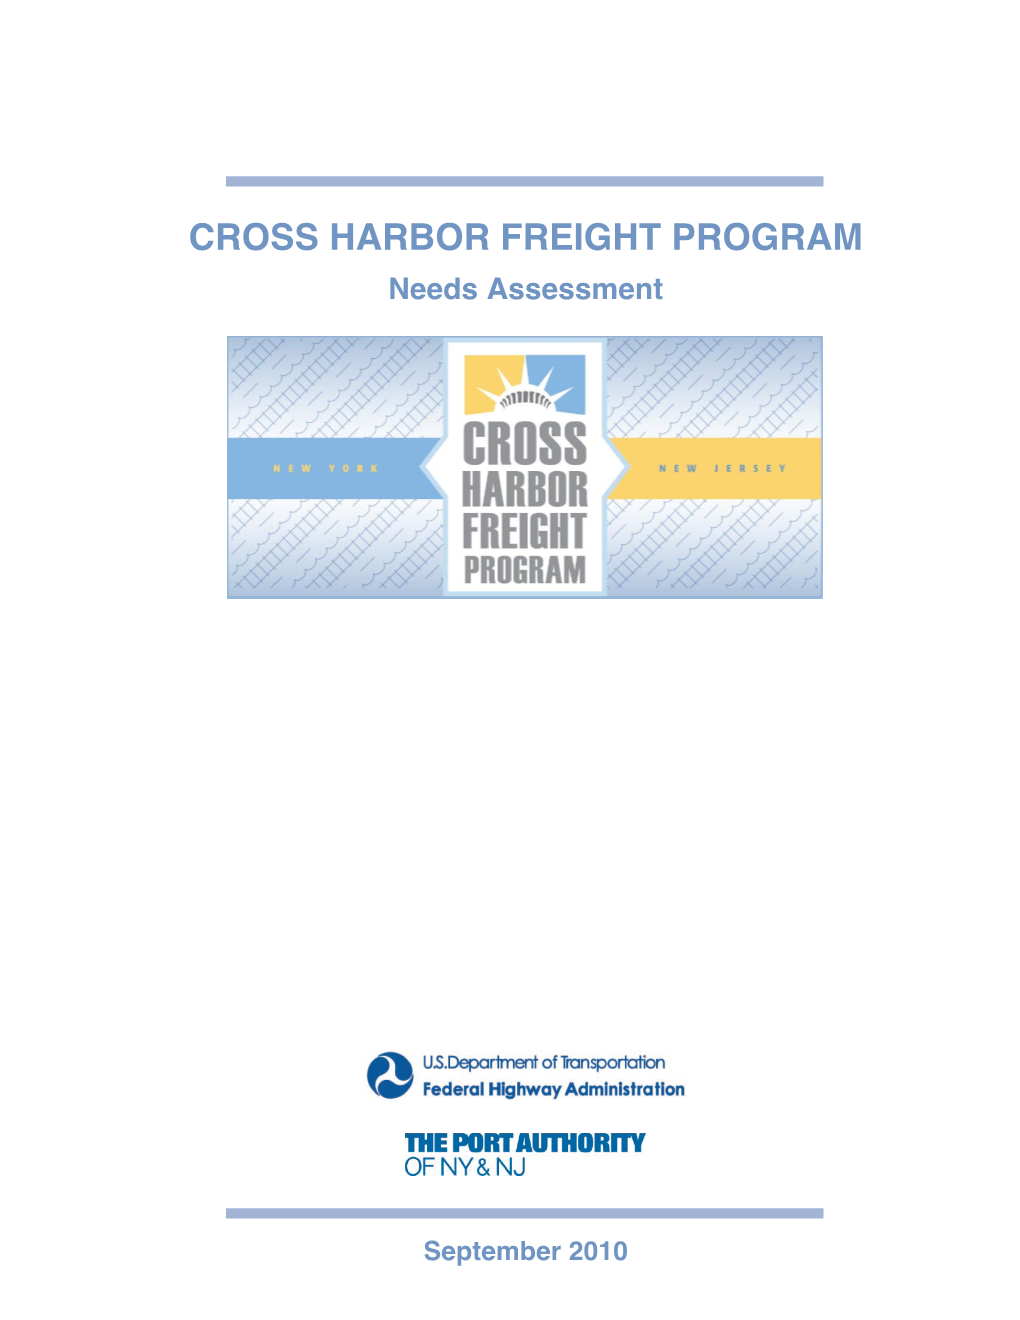 CROSS HARBOR FREIGHT PROGRAM Needs Assessment